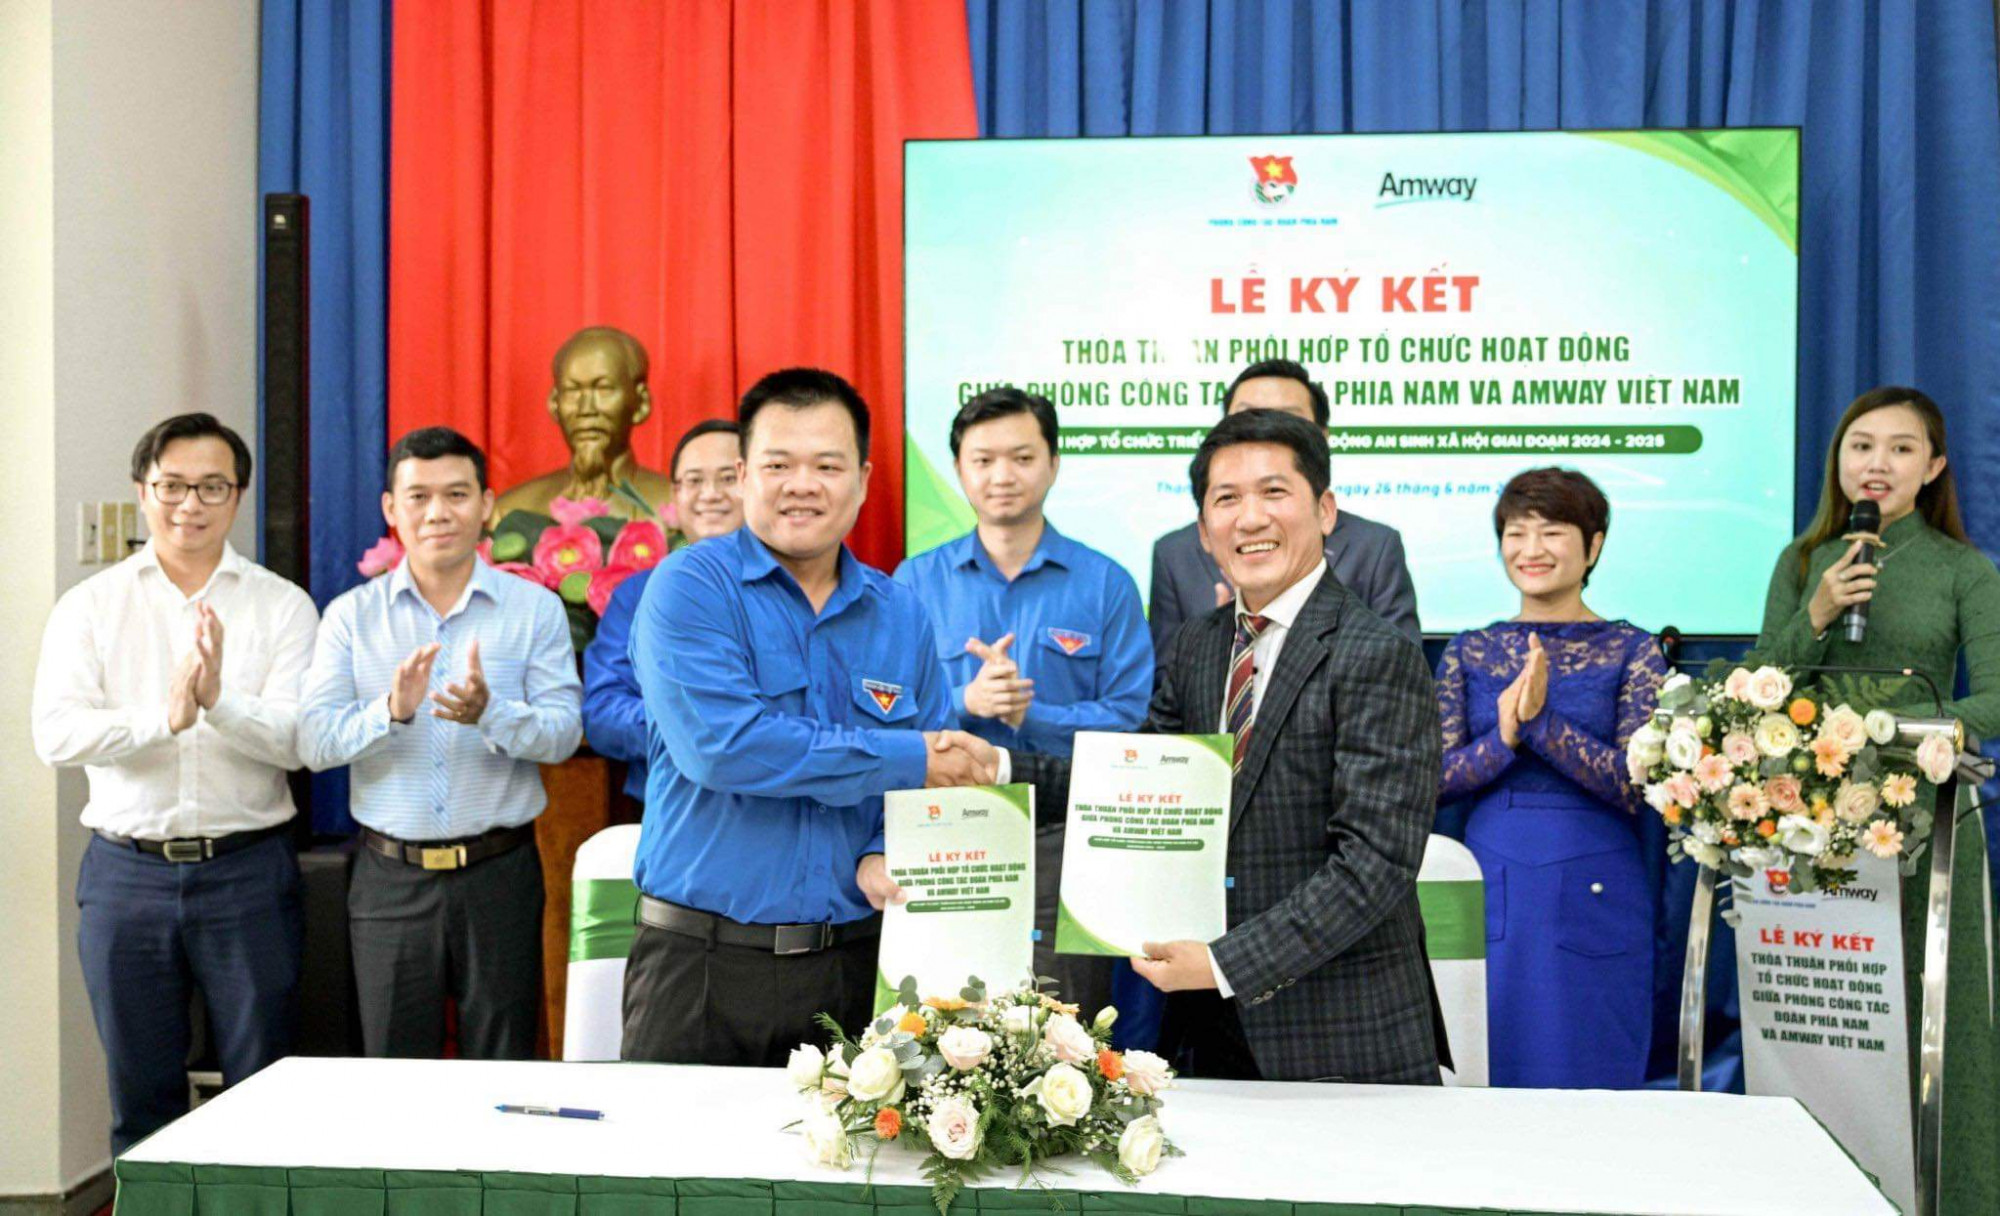 Nghi thức ký kết giữa Phòng công tác Đoàn phía Nam và Công ty TNHH Amway Việt Nam giai đoạn 2024 - 2025 với sự chứng kiến của lãnh đạo Trung ương Đoàn - Ảnh: Amway Việt Nam